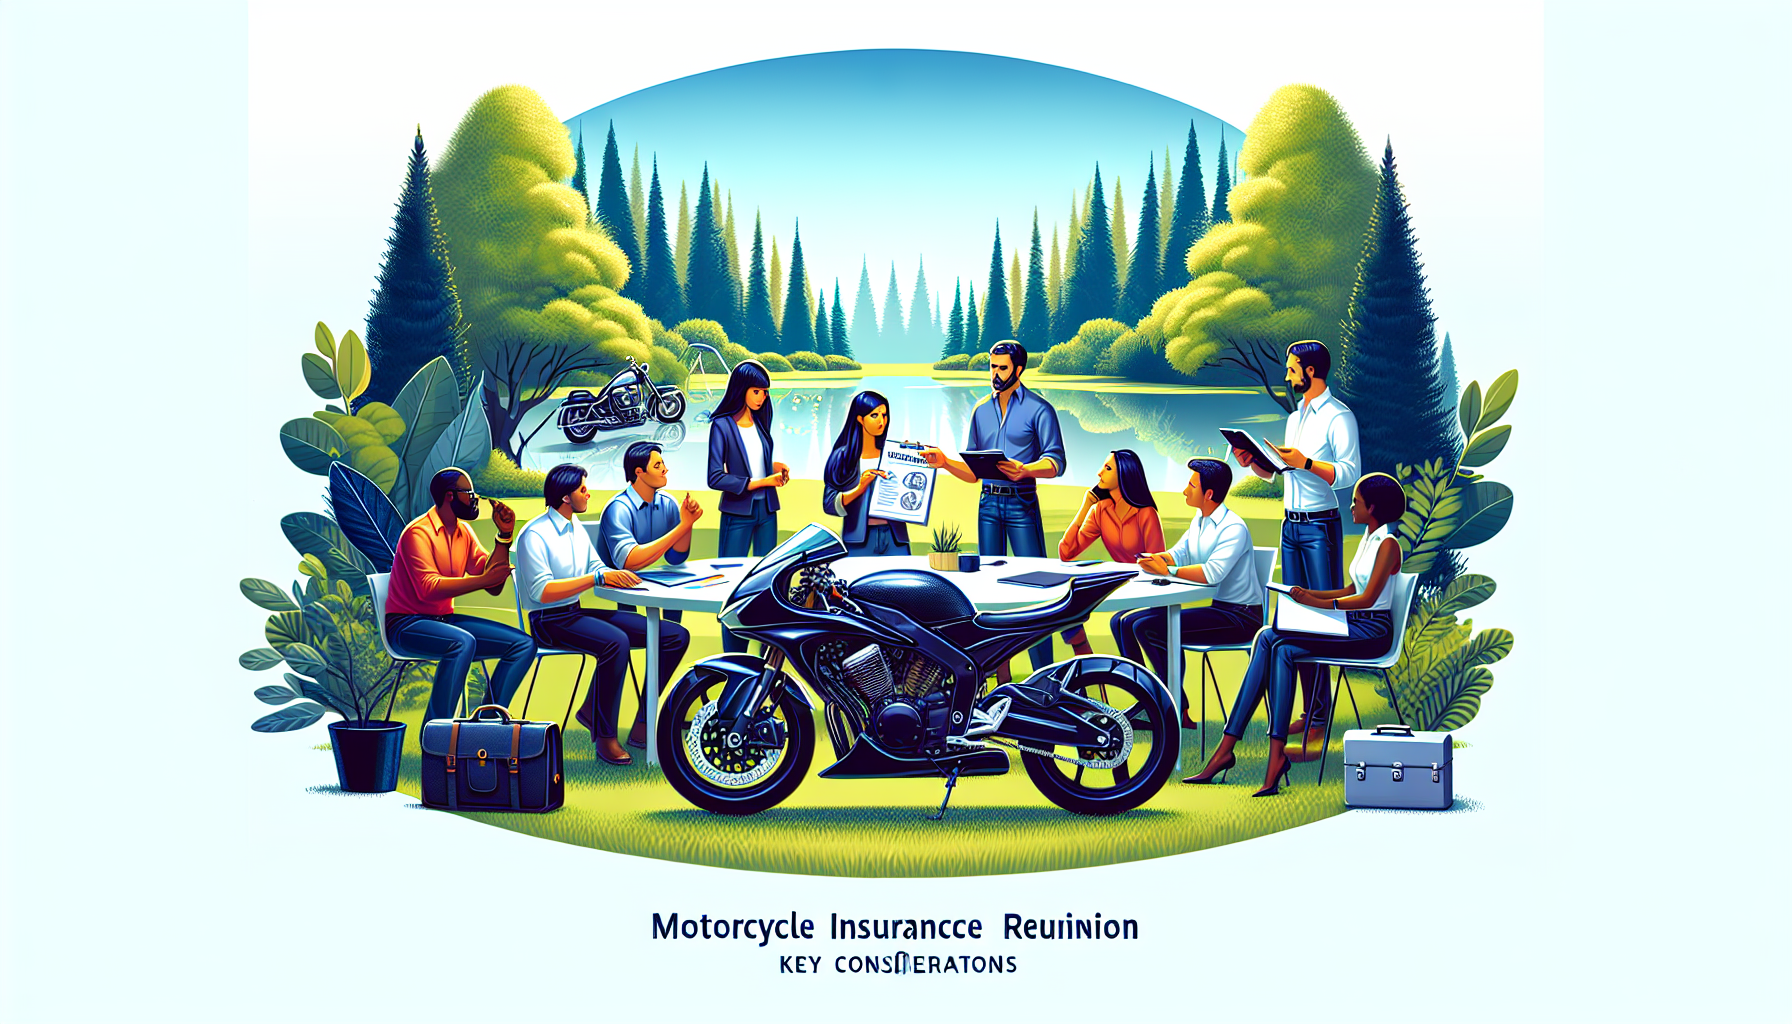 découvrez les critères à prendre en compte pour souscrire une assurance moto à la réunion. trouvez la meilleure couverture pour votre deux-roues avec nos conseils.